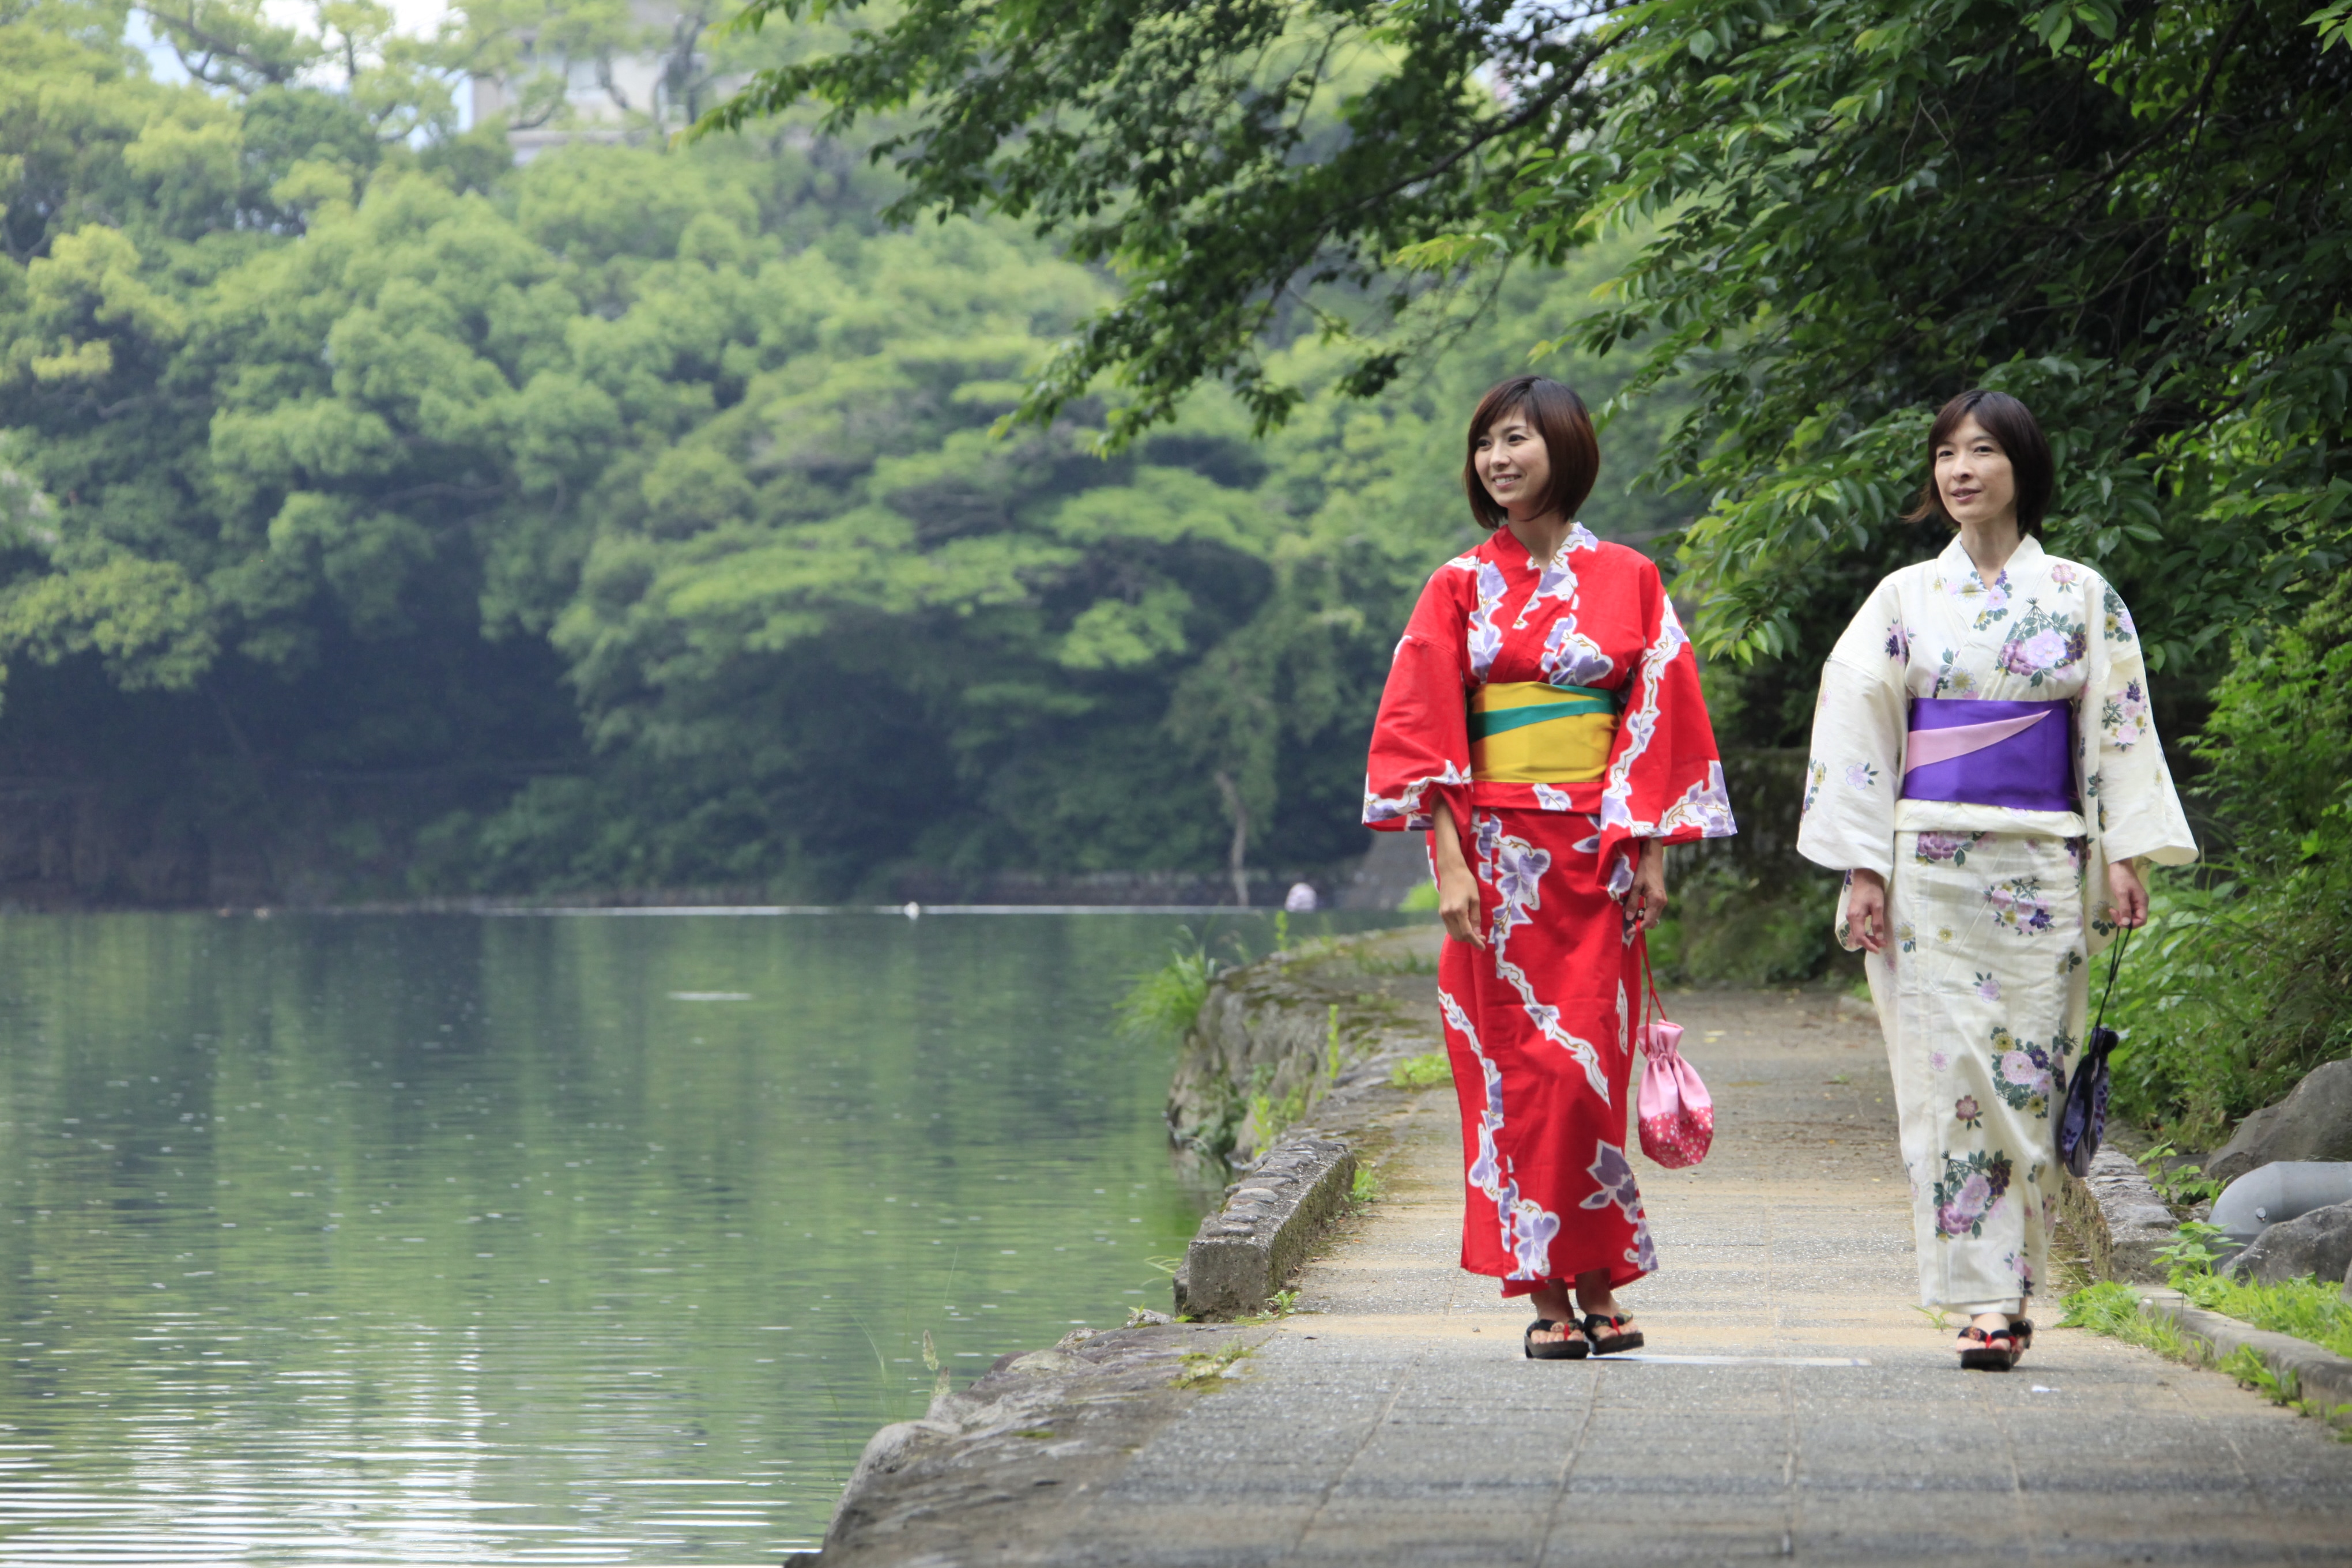 Take a walk around the area with a yukata